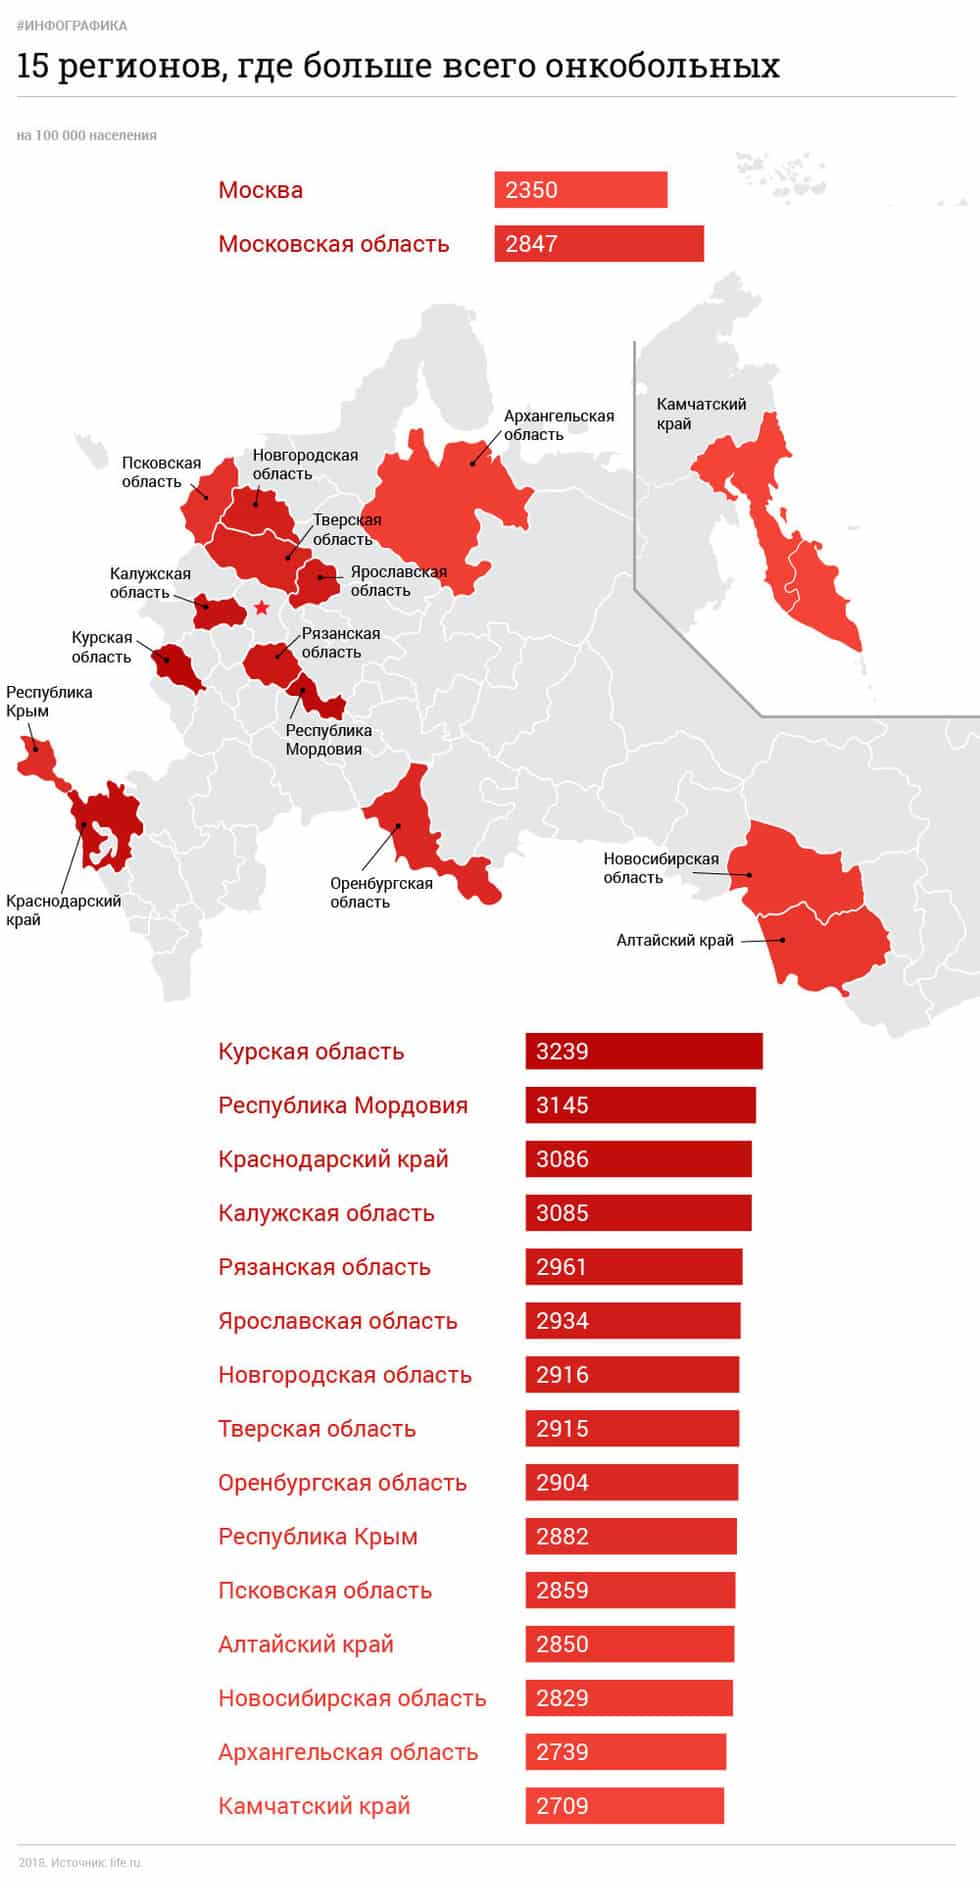 Онкологическая карта России: где больше всего онкобольных